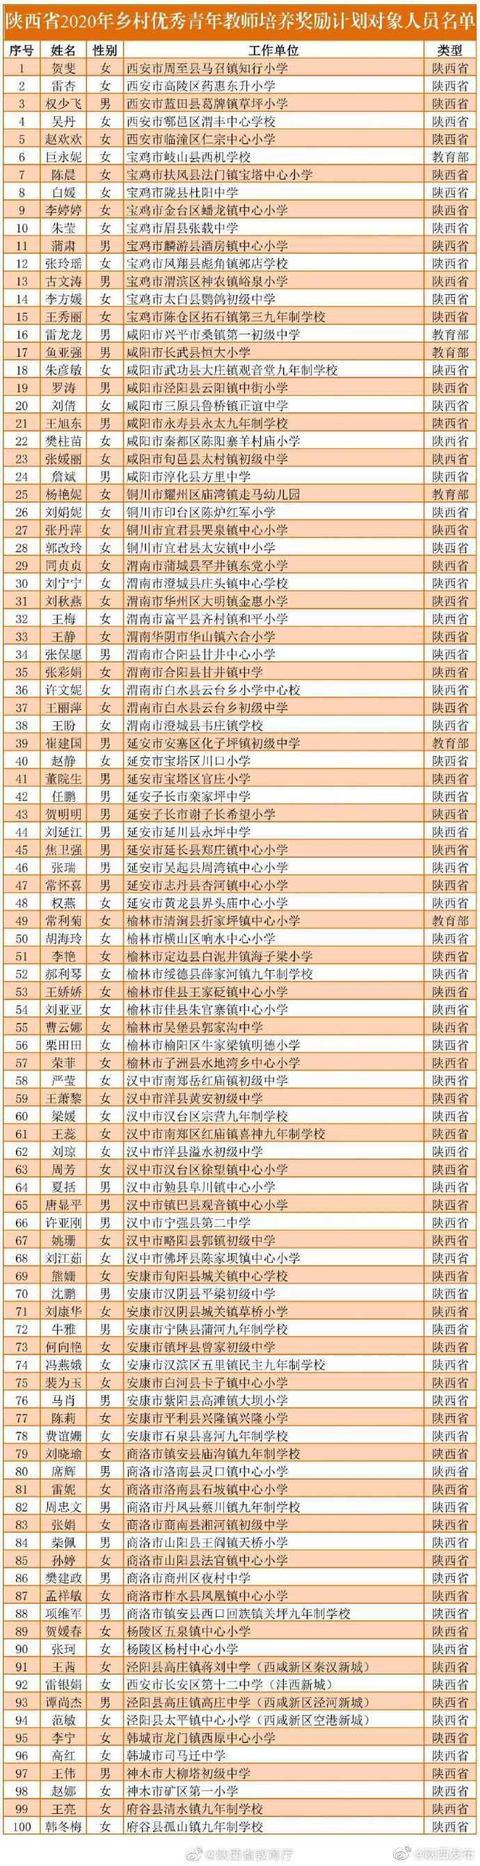 陕西省2020年乡村优秀青年教师培养奖励计划对象名单公布（附名单）